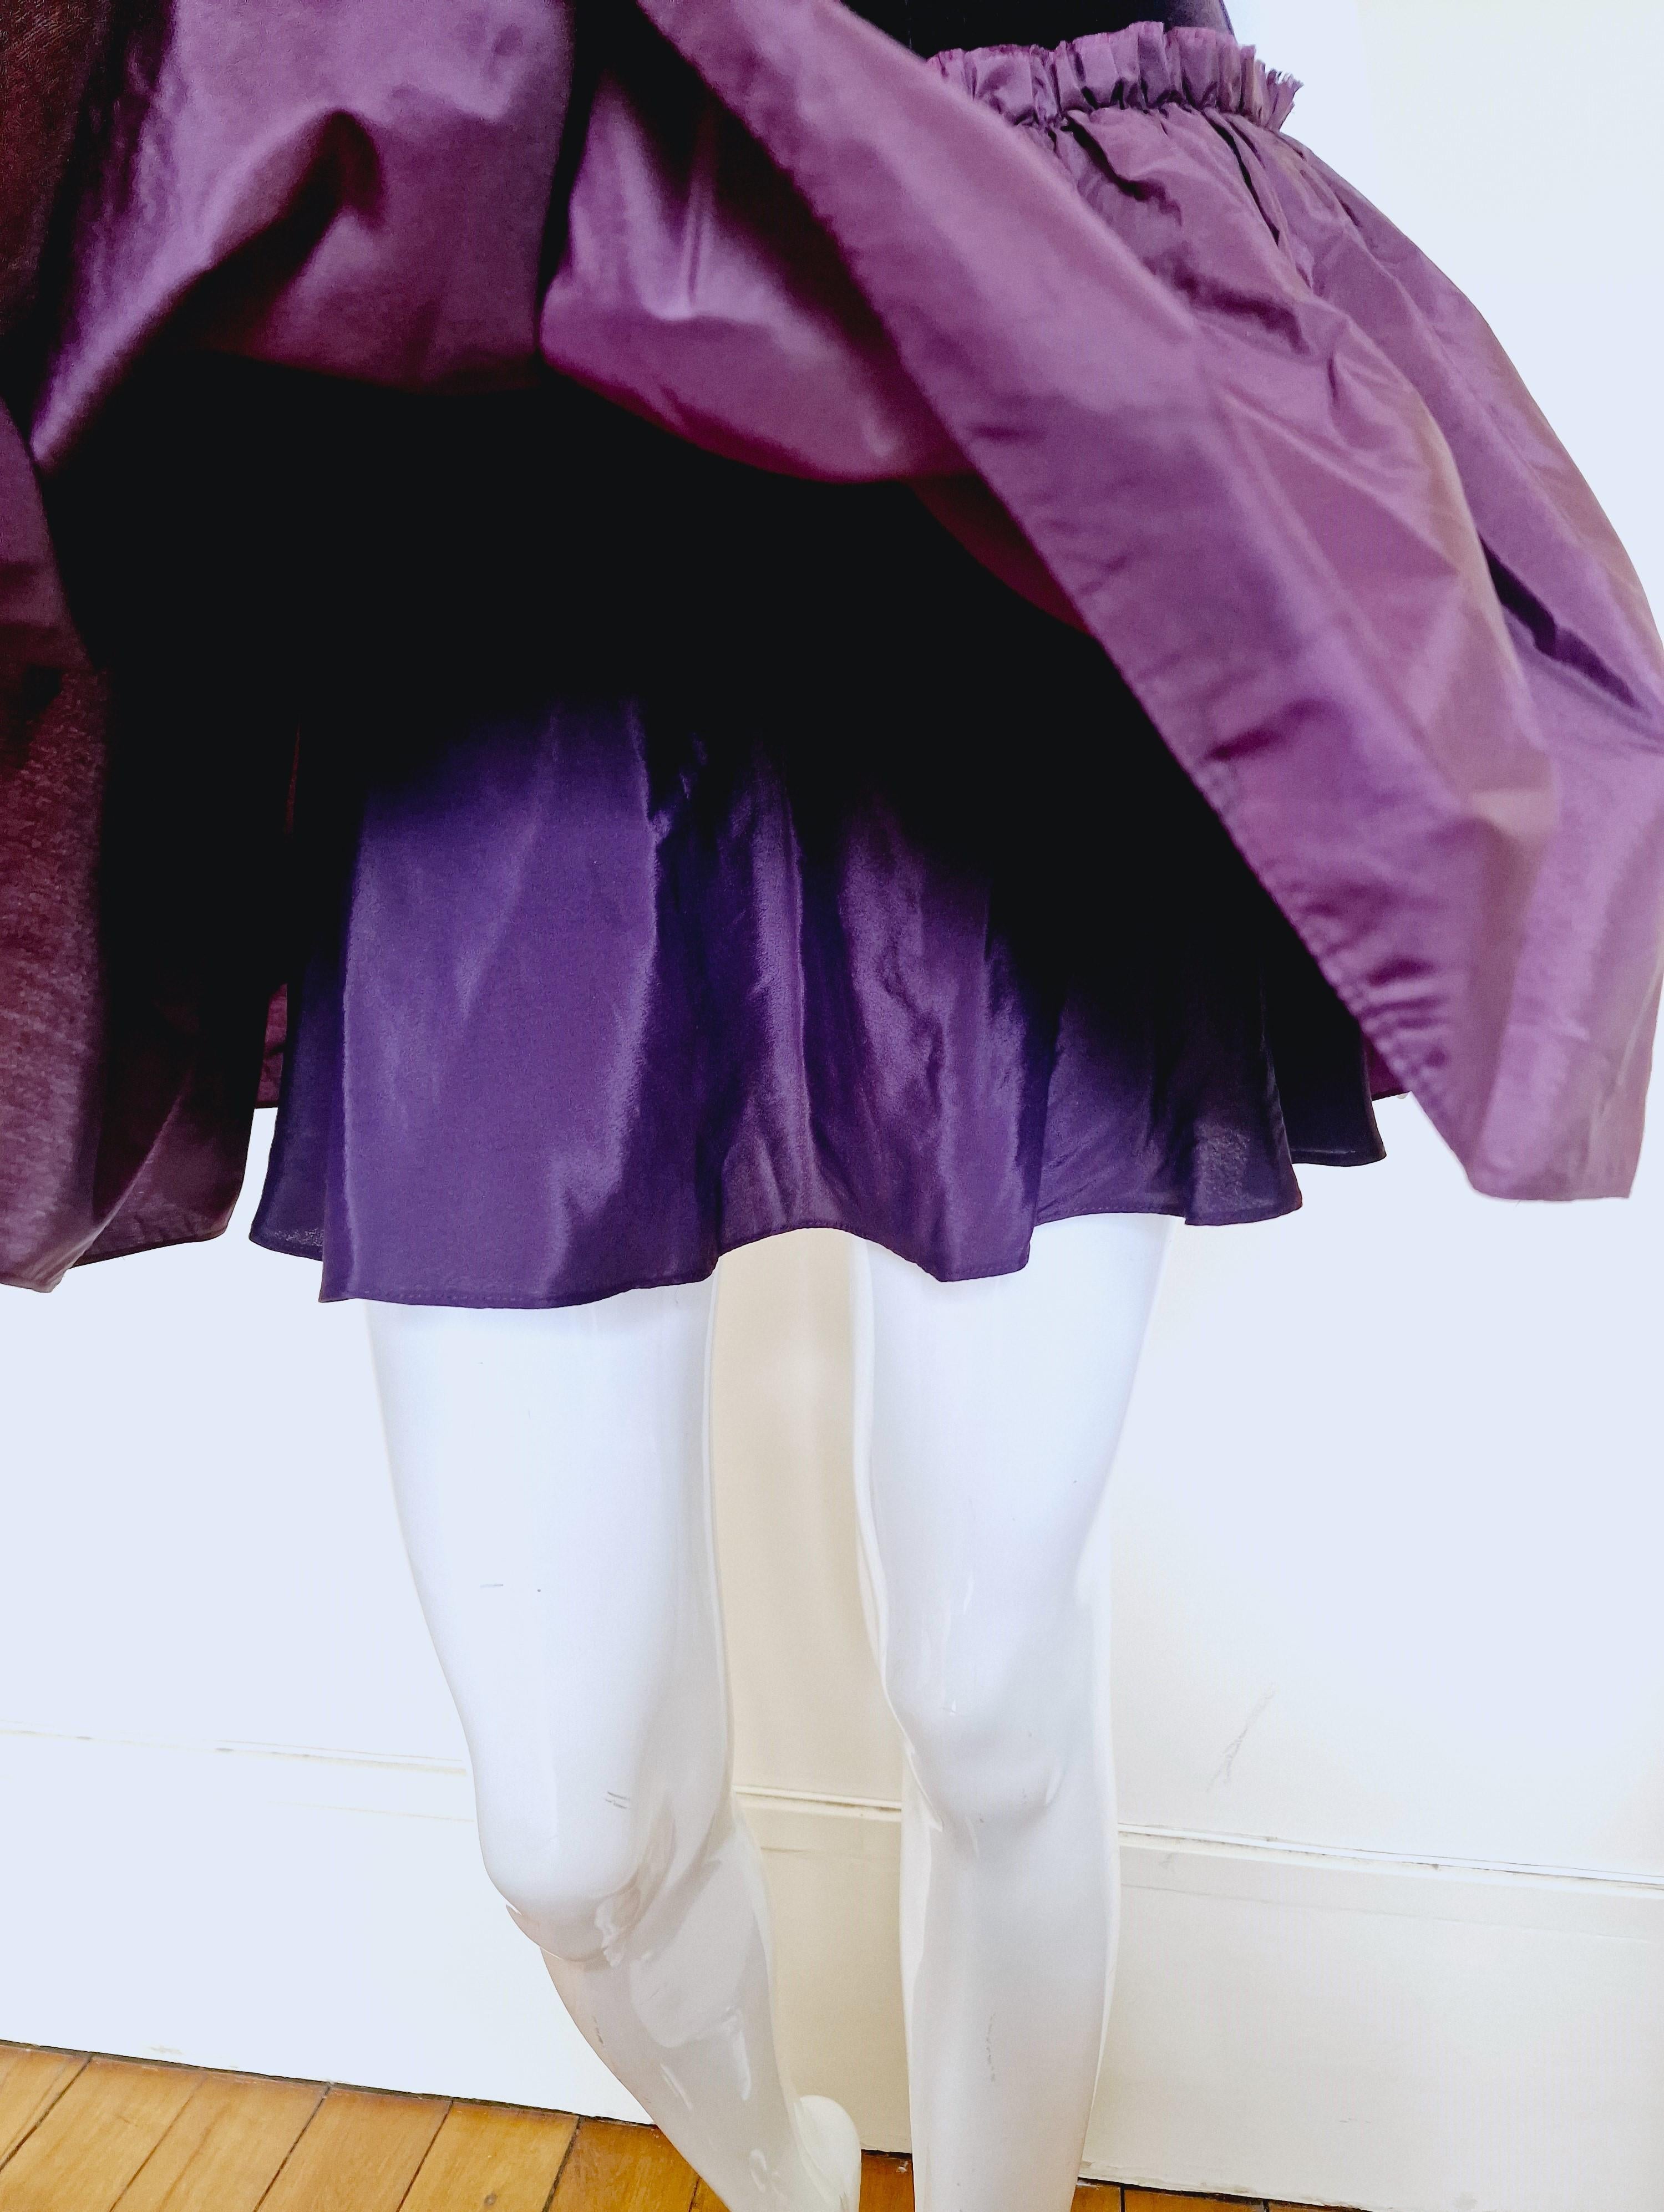 Alexander McQueen Corset Bustier Lace Up Tutu Petticoat Violet Medium Gown Dress For Sale 3